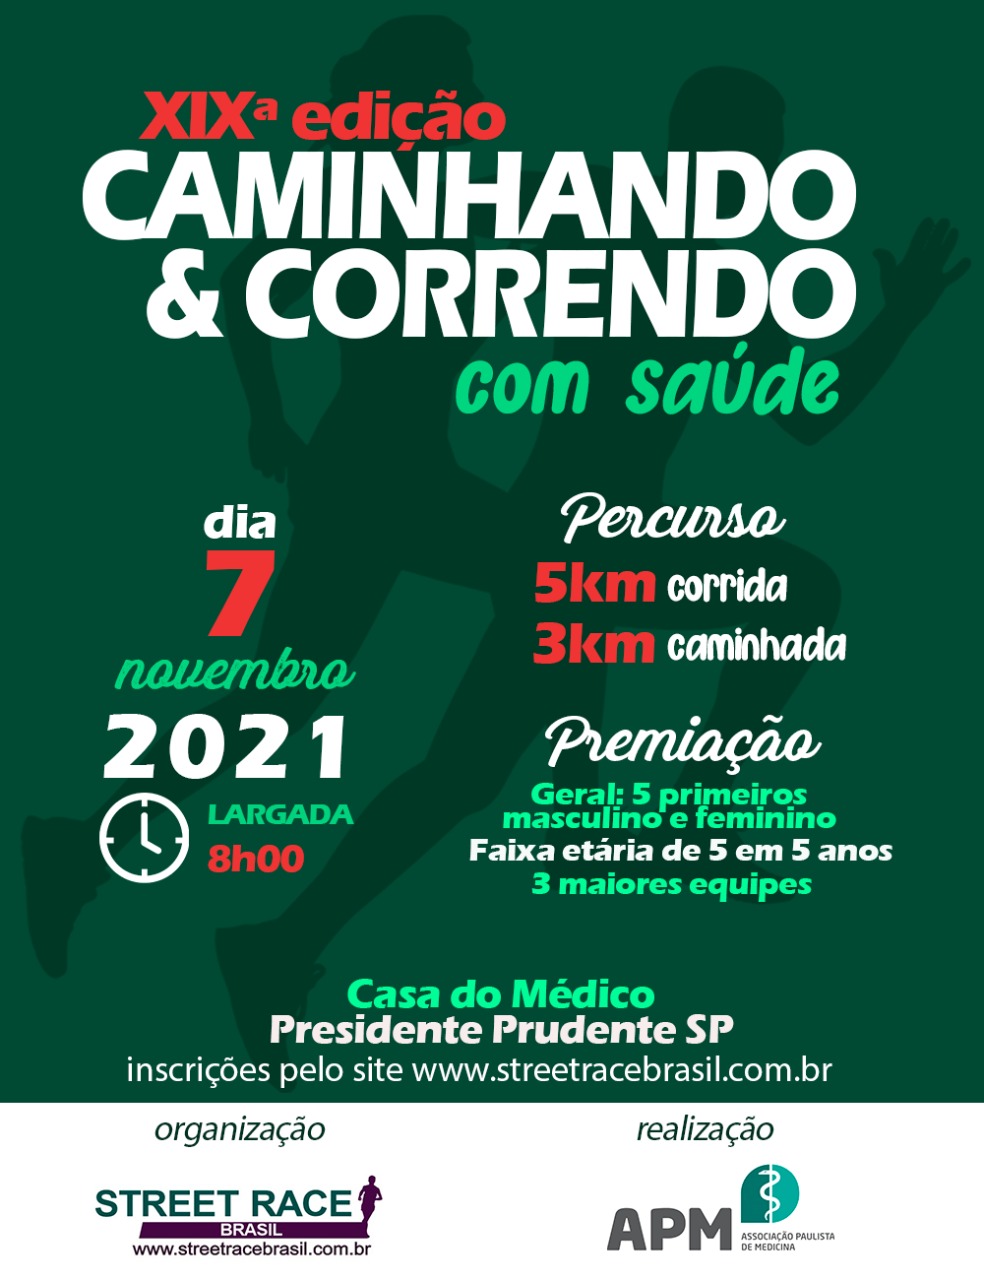 XIX EDIÇÃO CAMINHANDO & CORRENDO COM SAÚDE